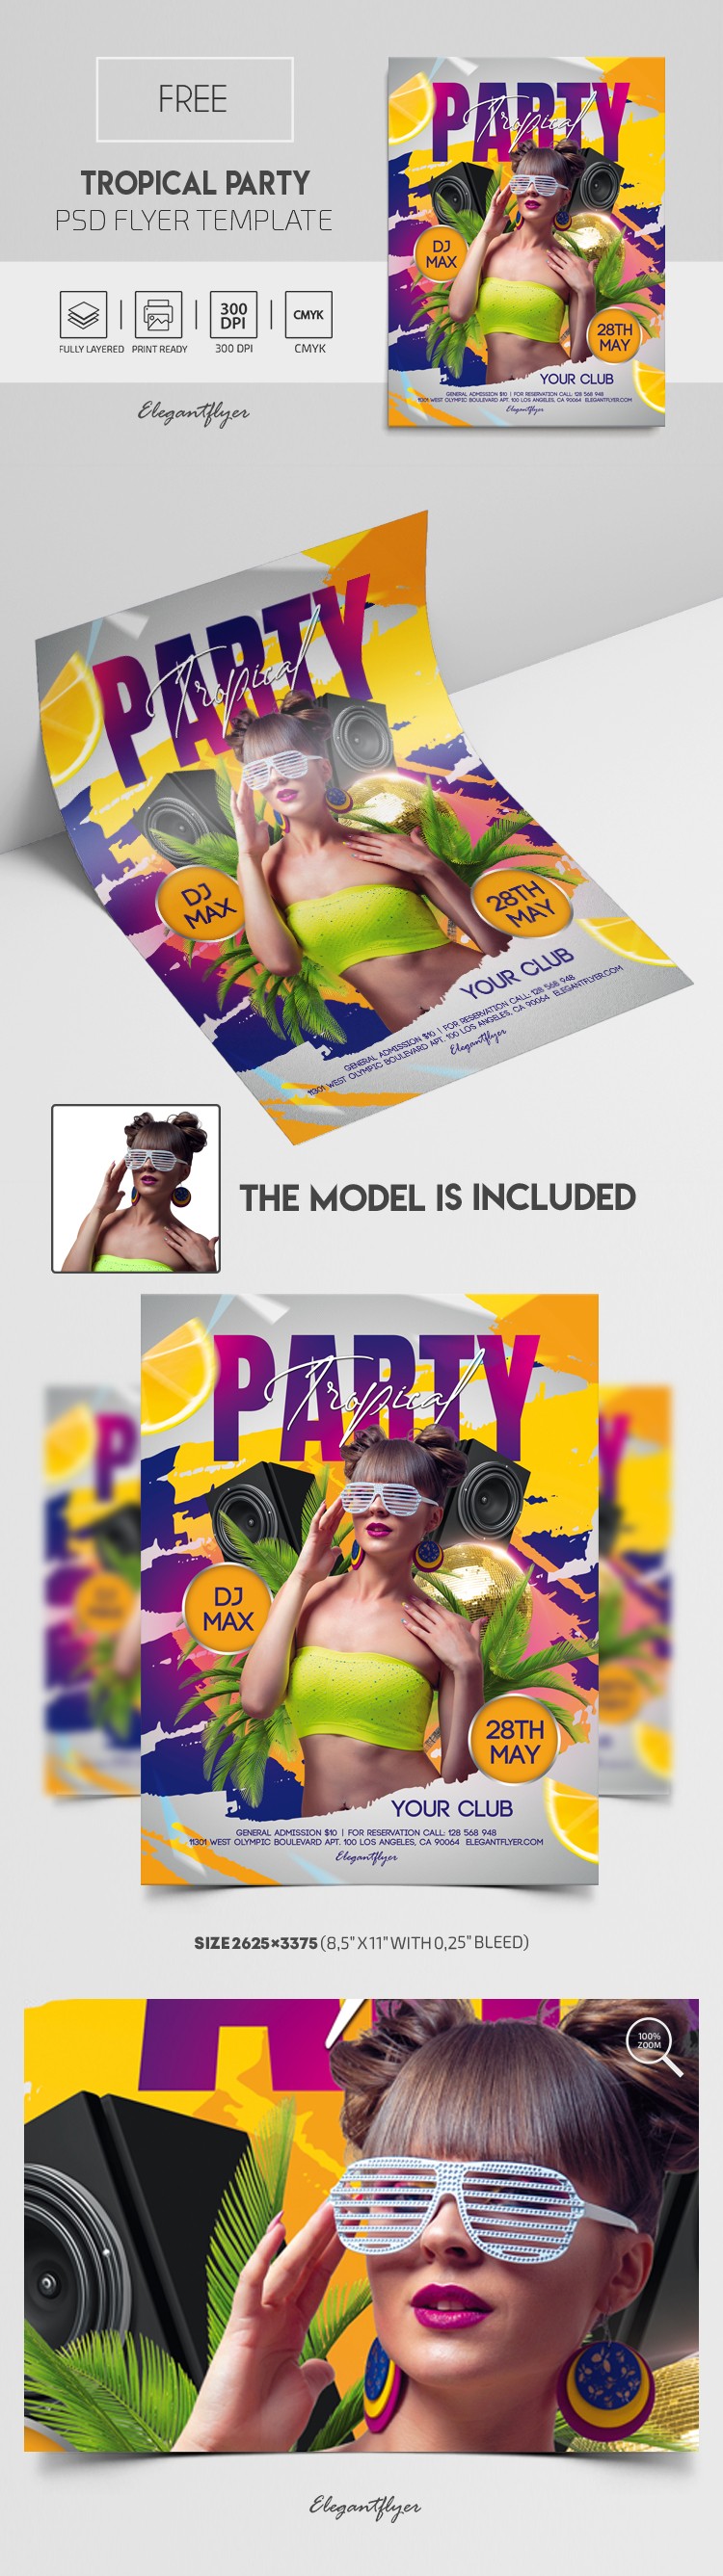 Tropical Party Flyer by ElegantFlyer